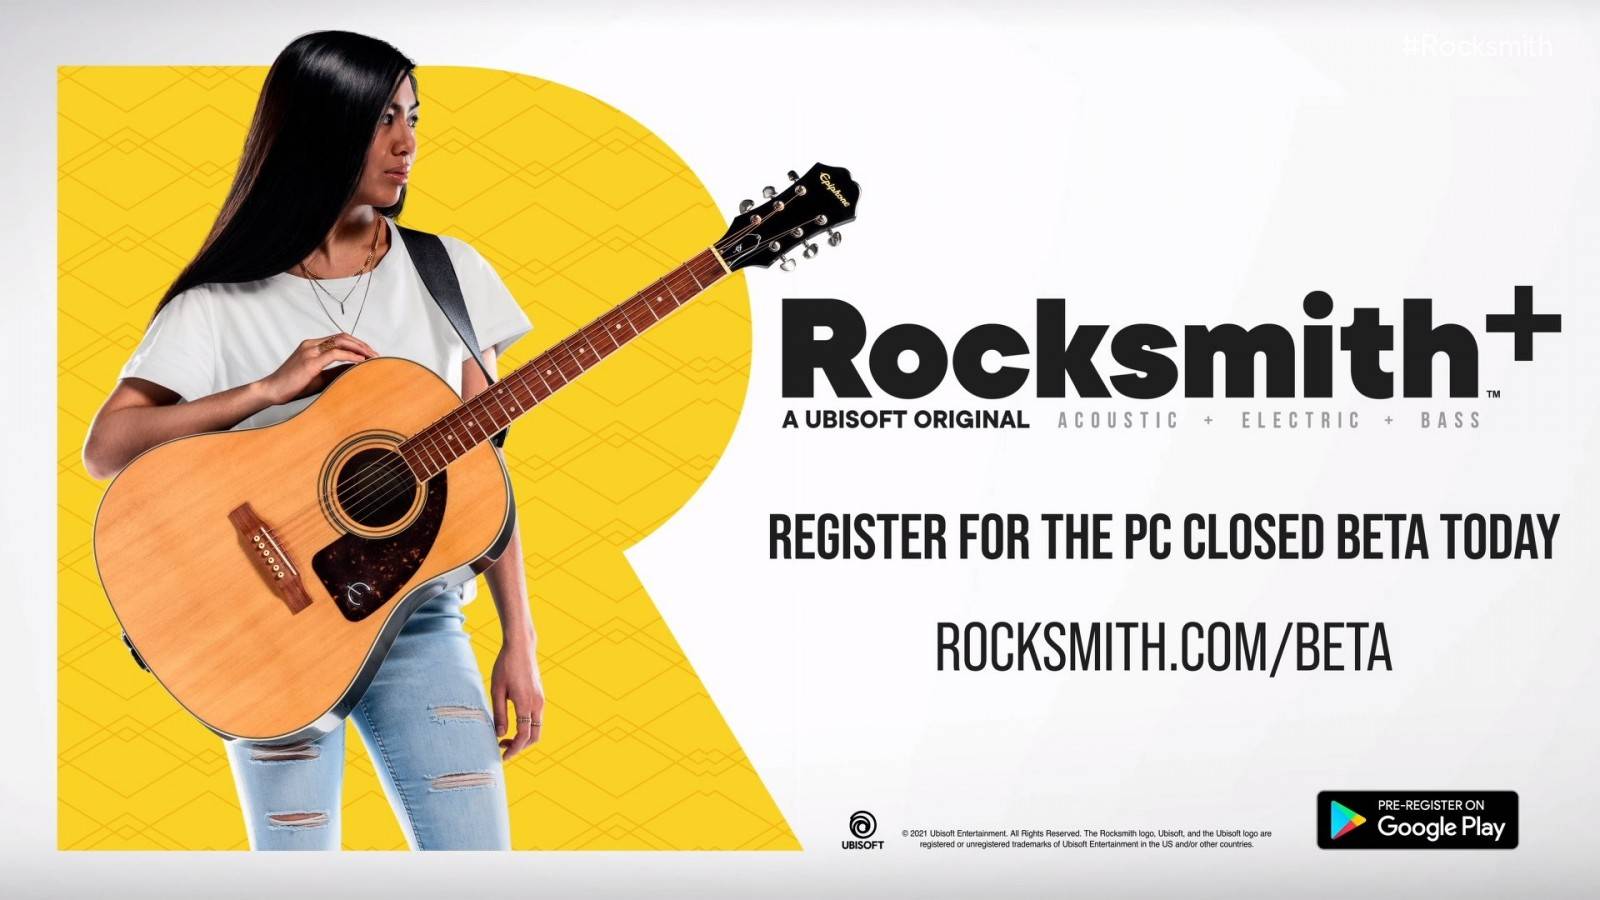 #Rocksmith+ nos ayudará a aprender a tocar guitarra de manera fácil e interactiva